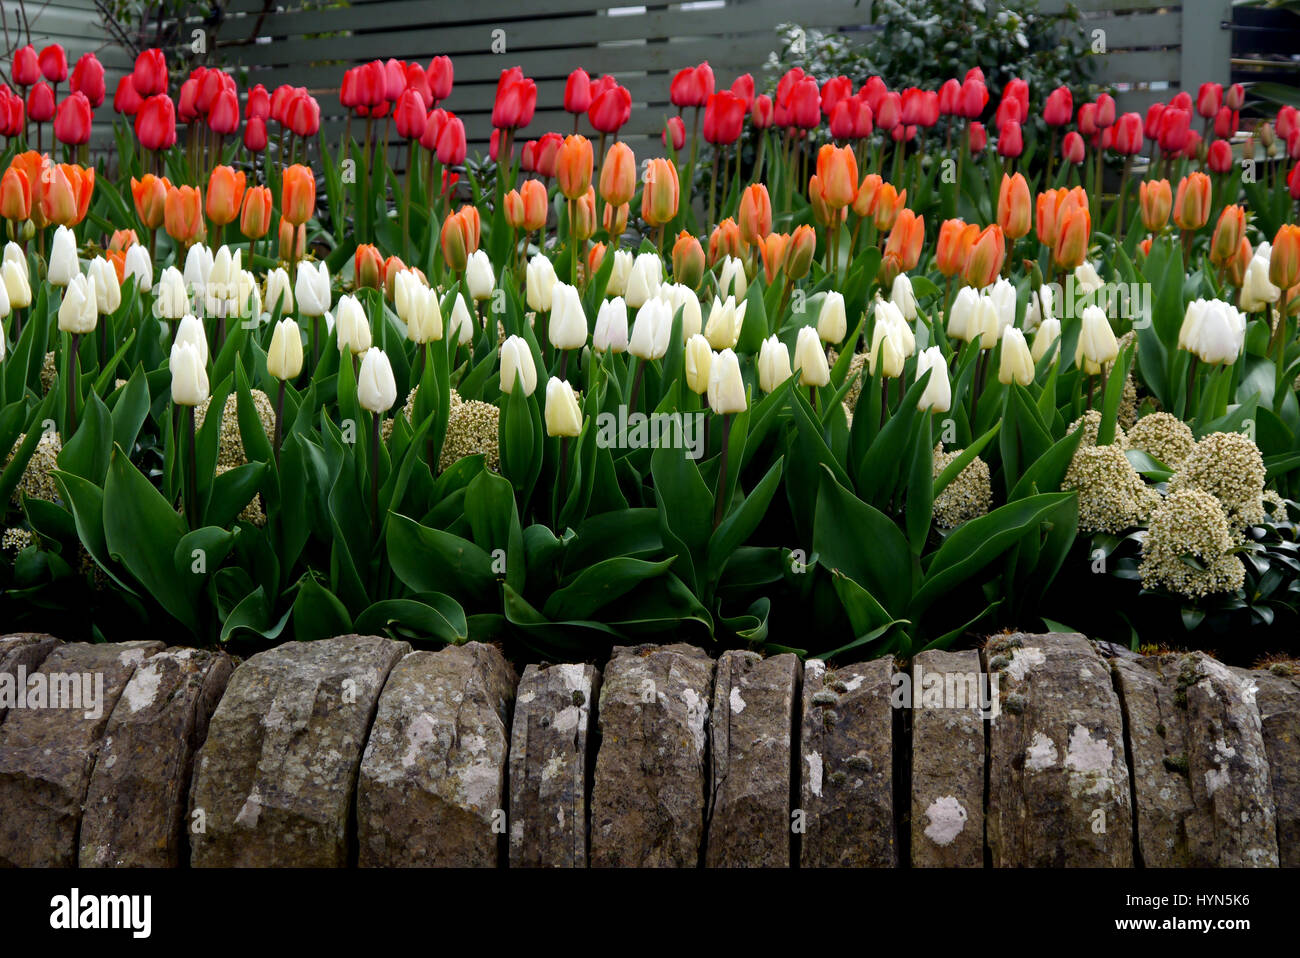 Reihen von bunten Tulpen im Garten RHS Harlow Carr, Harrogate, Yorkshire. Stockfoto